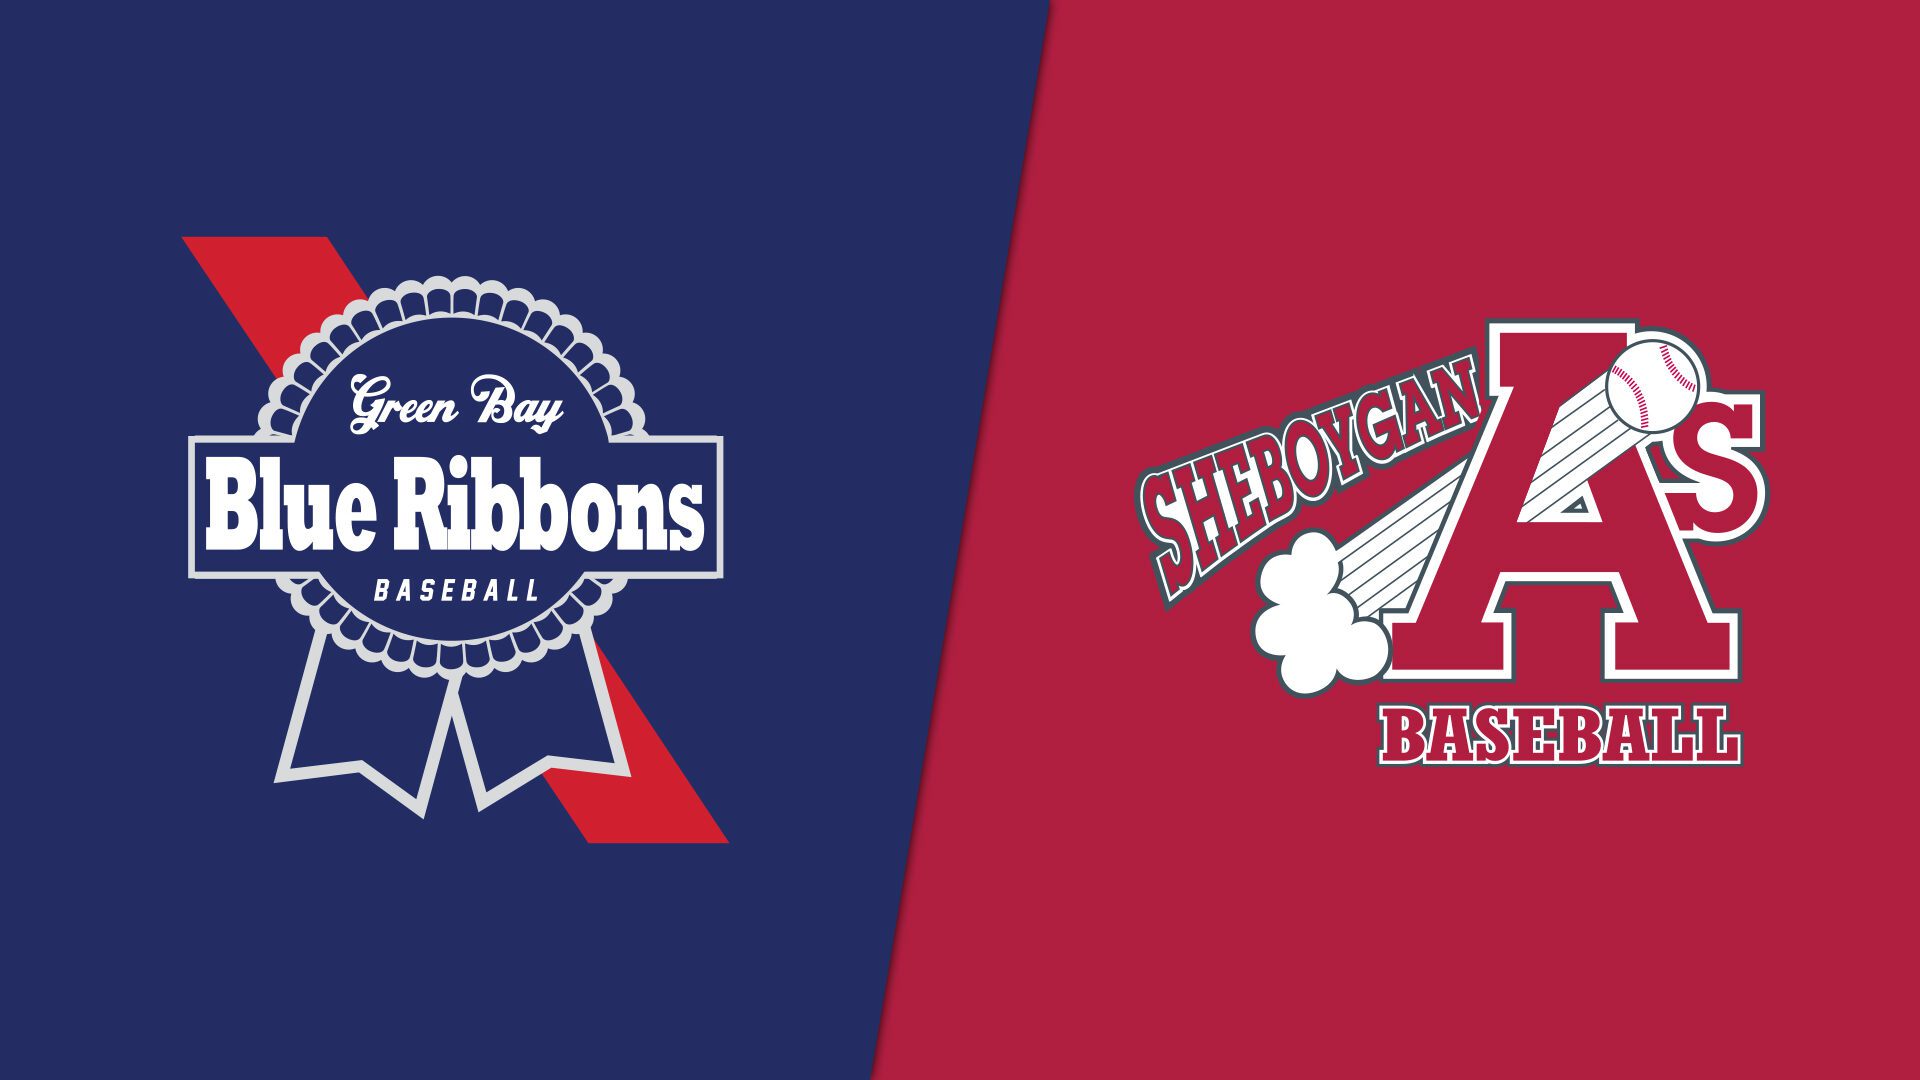 Sheboygan A's vs. Green Bay Blue Ribbons